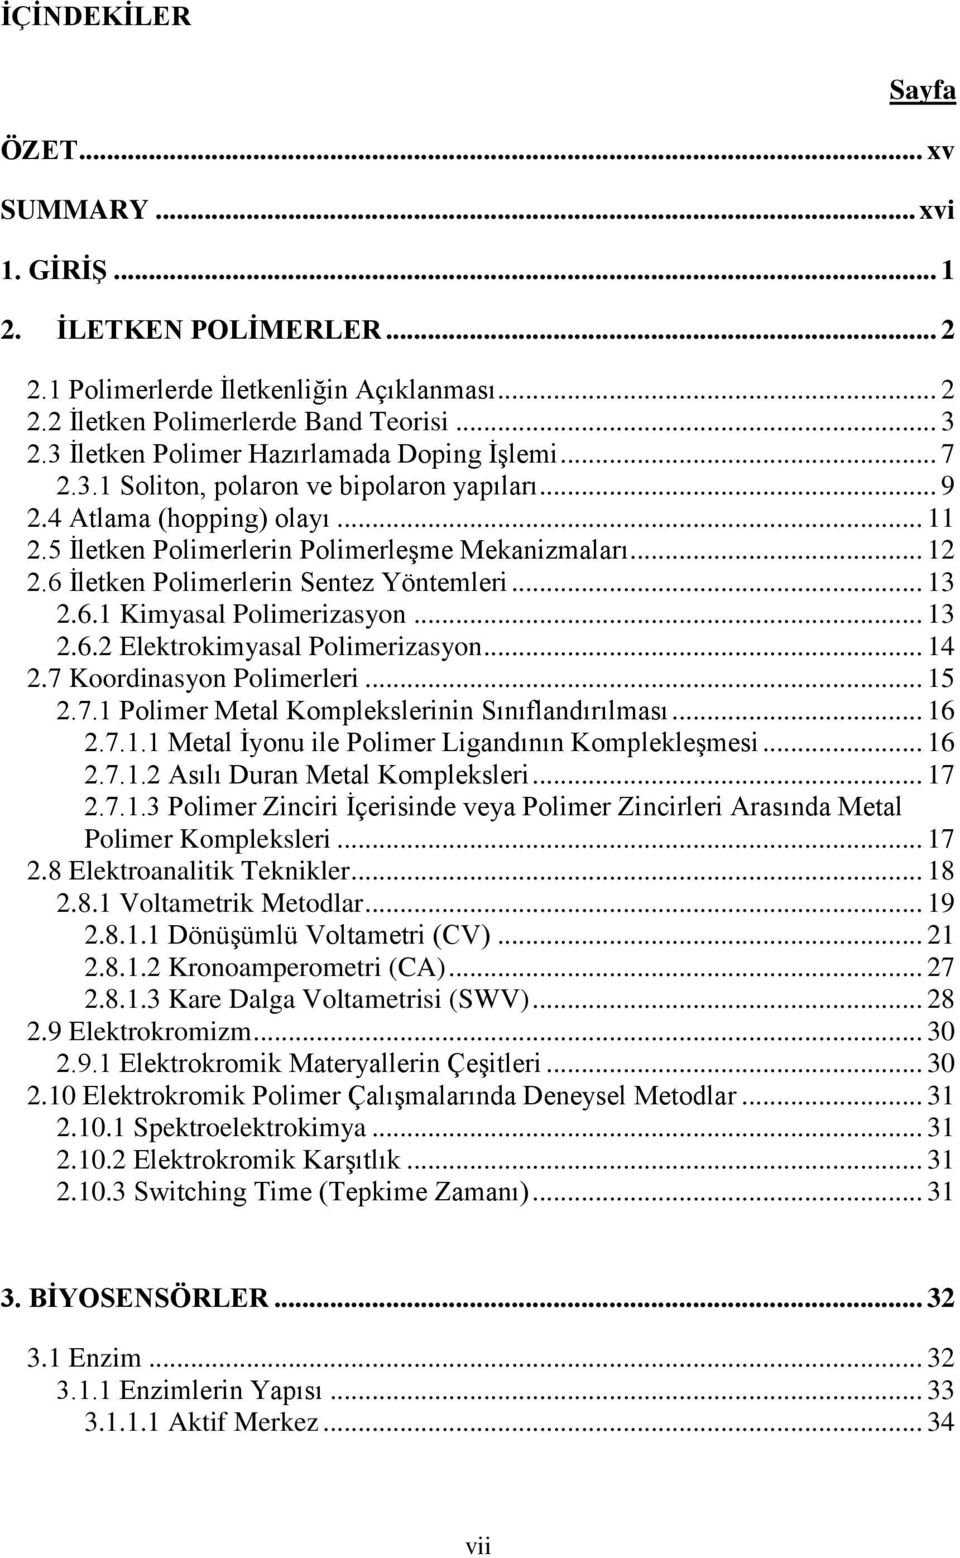 6 İletken Polimerlerin Sentez Yöntemleri... 13 2.6.1 Kimyasal Polimerizasyon... 13 2.6.2 Elektrokimyasal Polimerizasyon... 14 2.7 Koordinasyon Polimerleri... 15 2.7.1 Polimer Metal Komplekslerinin Sınıflandırılması.